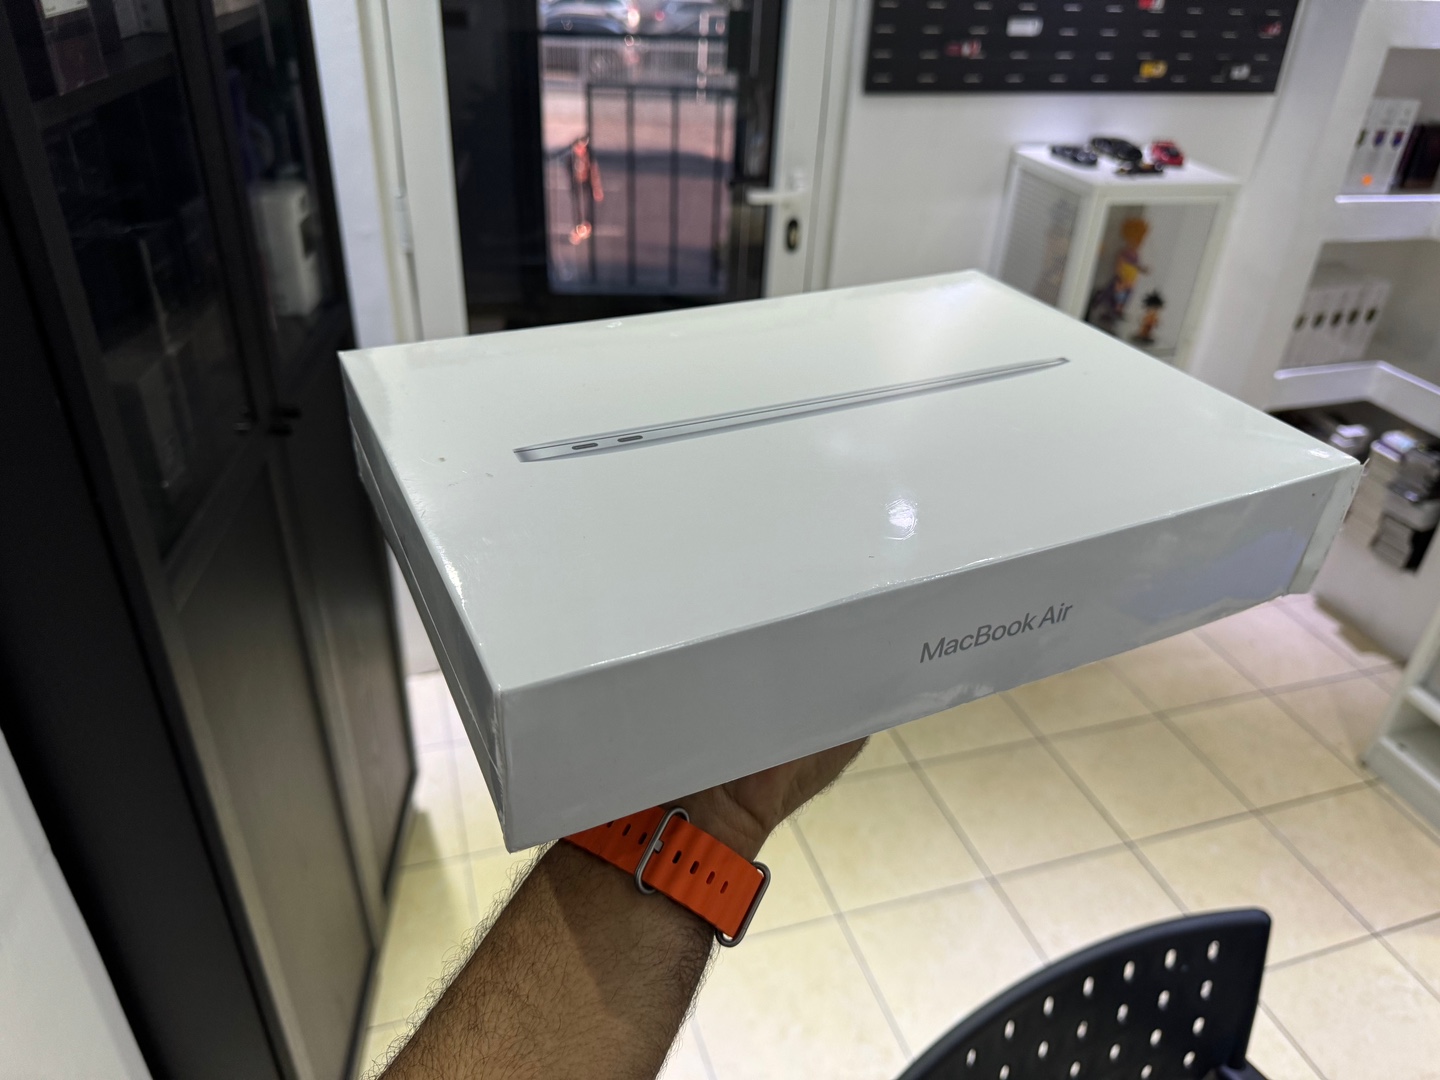 computadoras y laptops - MacBook Air 13.1 INCH  M1 Apple chip | 256GB | 8GB RAM Nuevo Sellado $ 50,995 NE